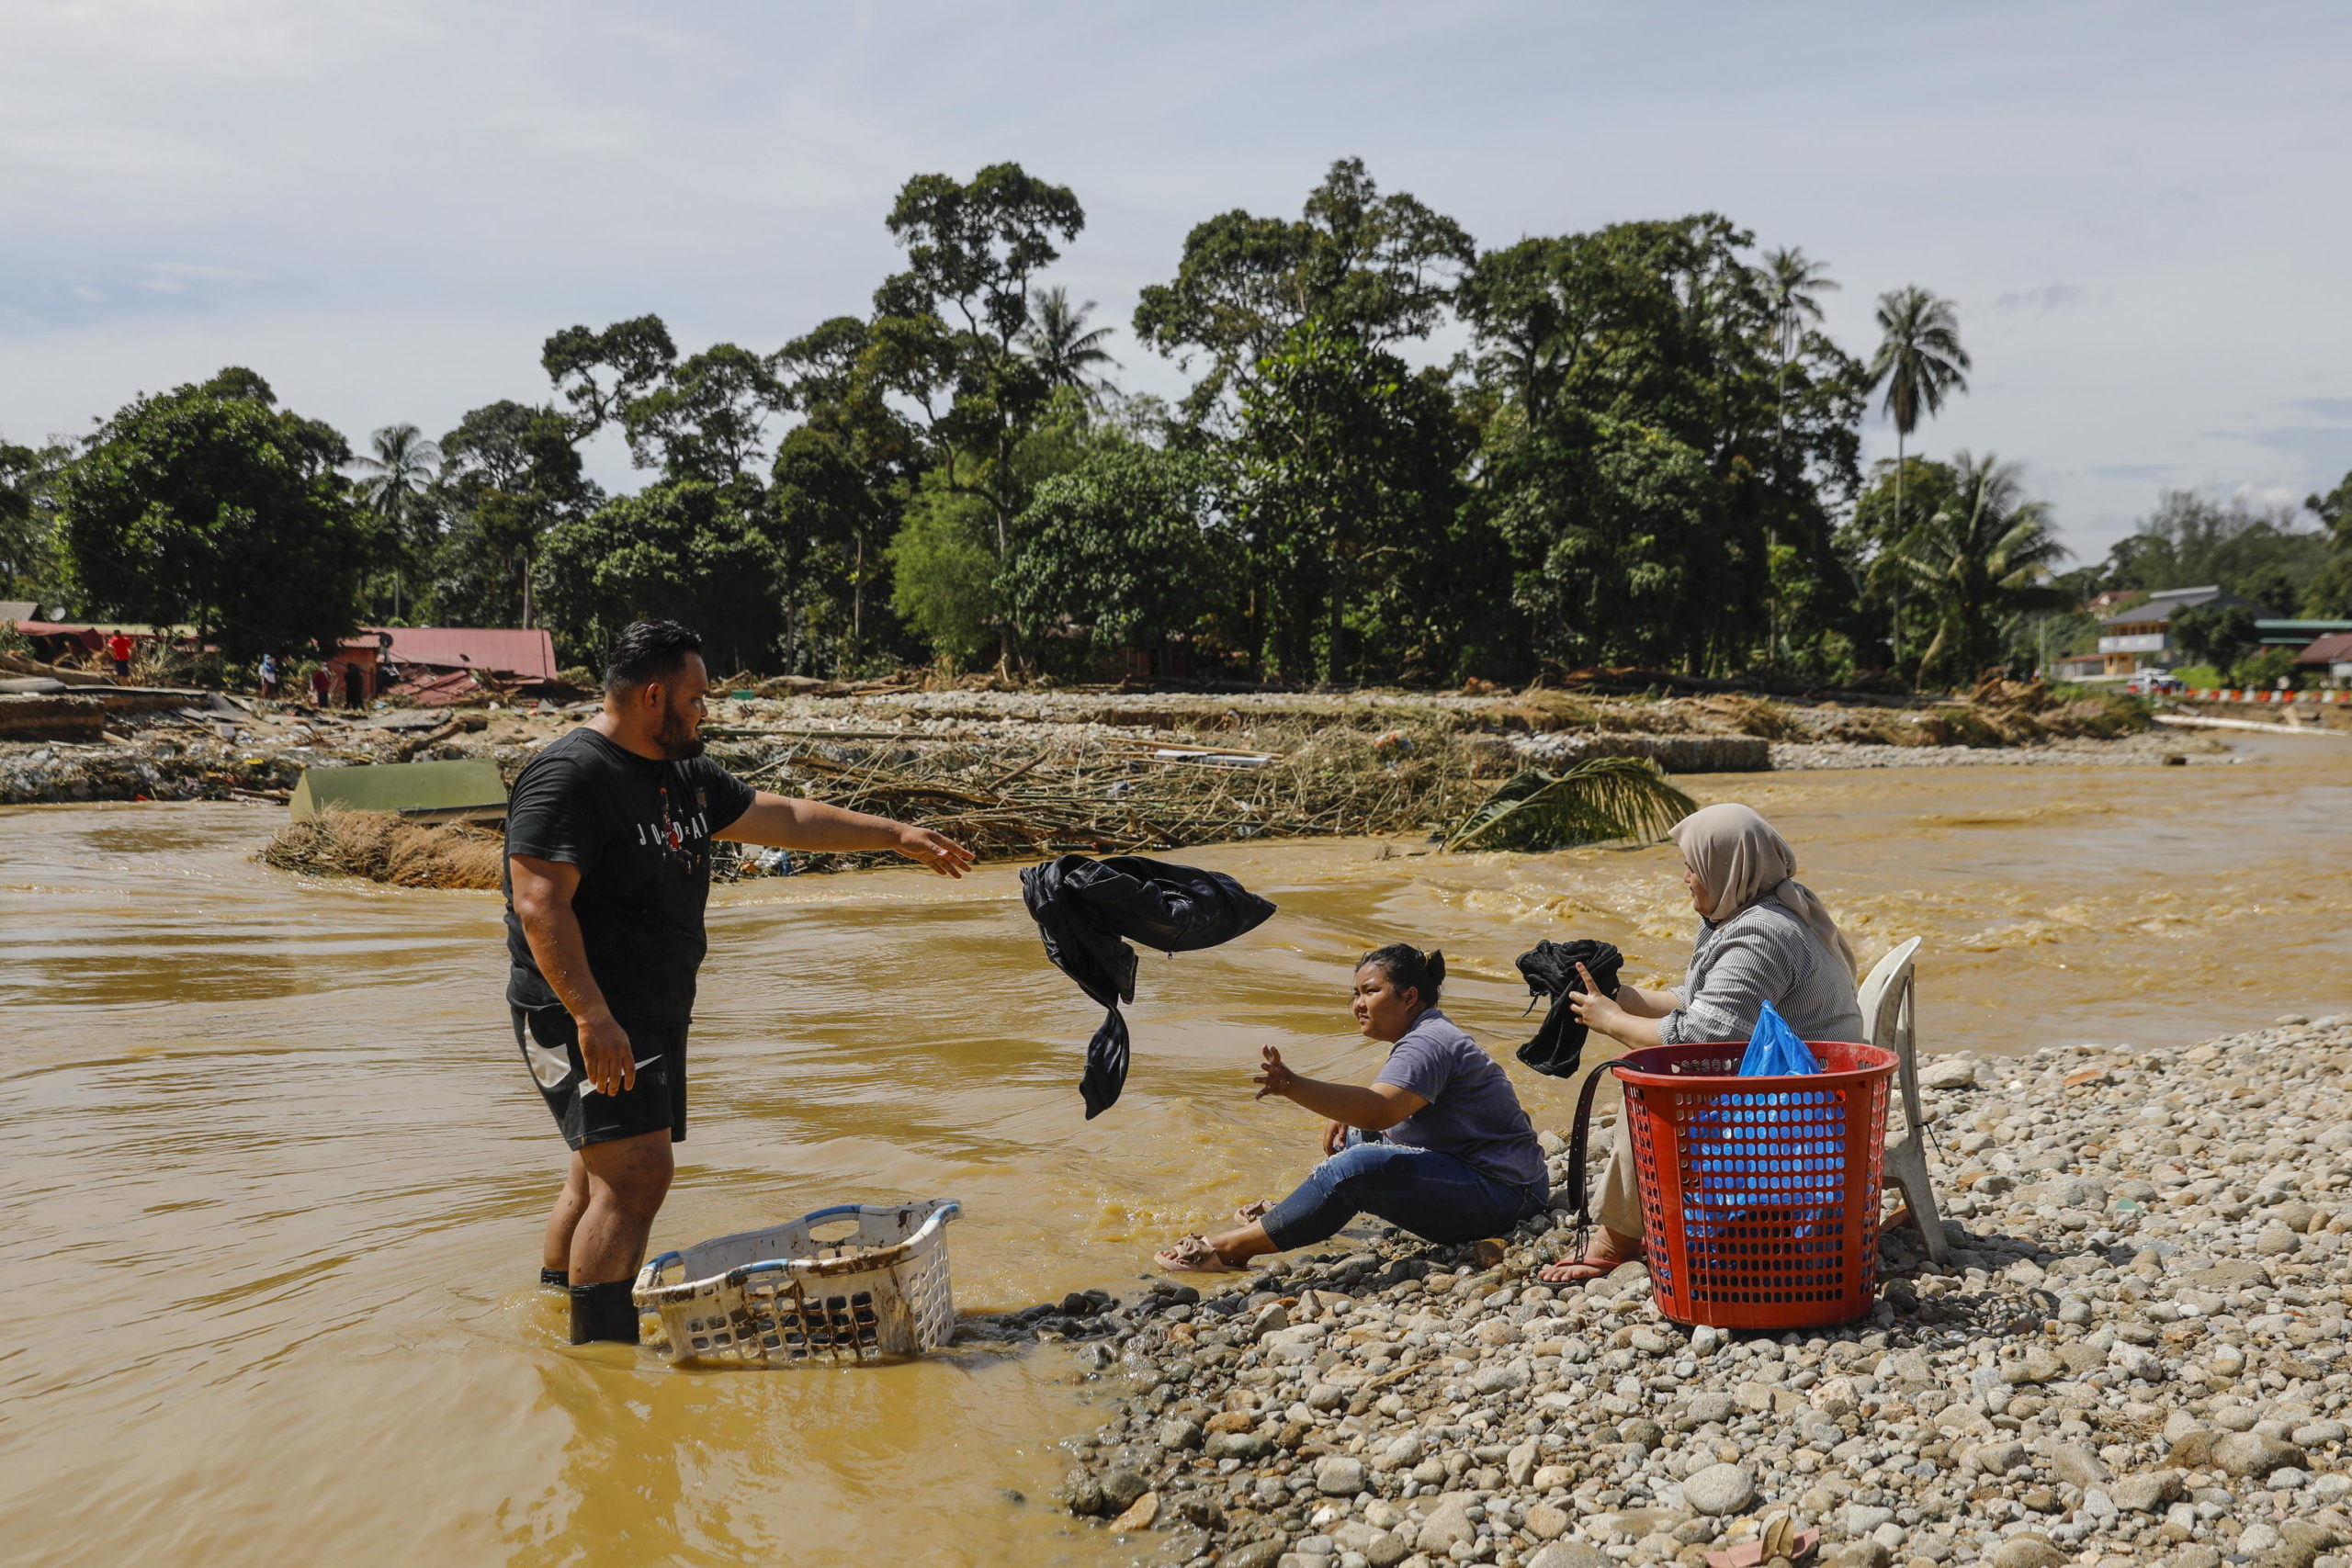 Uomini e donne utilizzano il fiume per lavare i panni dopo che le forniture di acqua ed elettricità sono state tagliate a seguito dell'inondazione